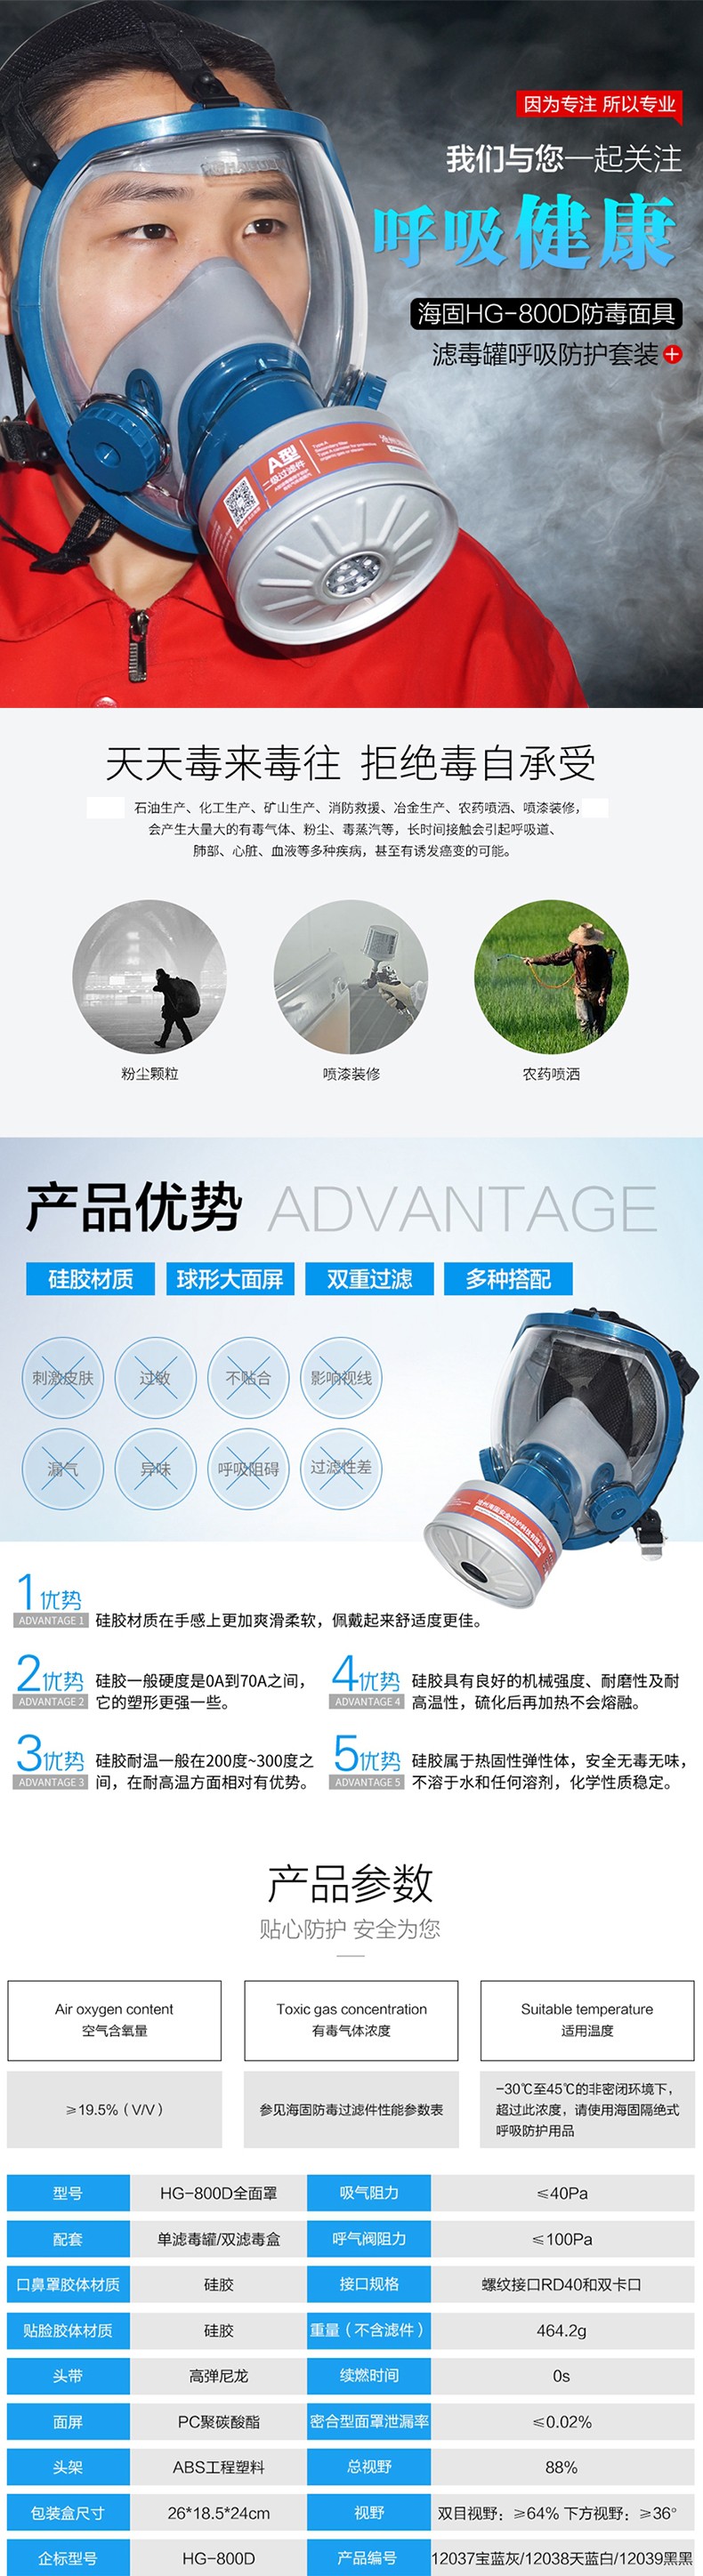 海固HG-800D HG-LV/P-E-2酸性气体专用防毒面具图片